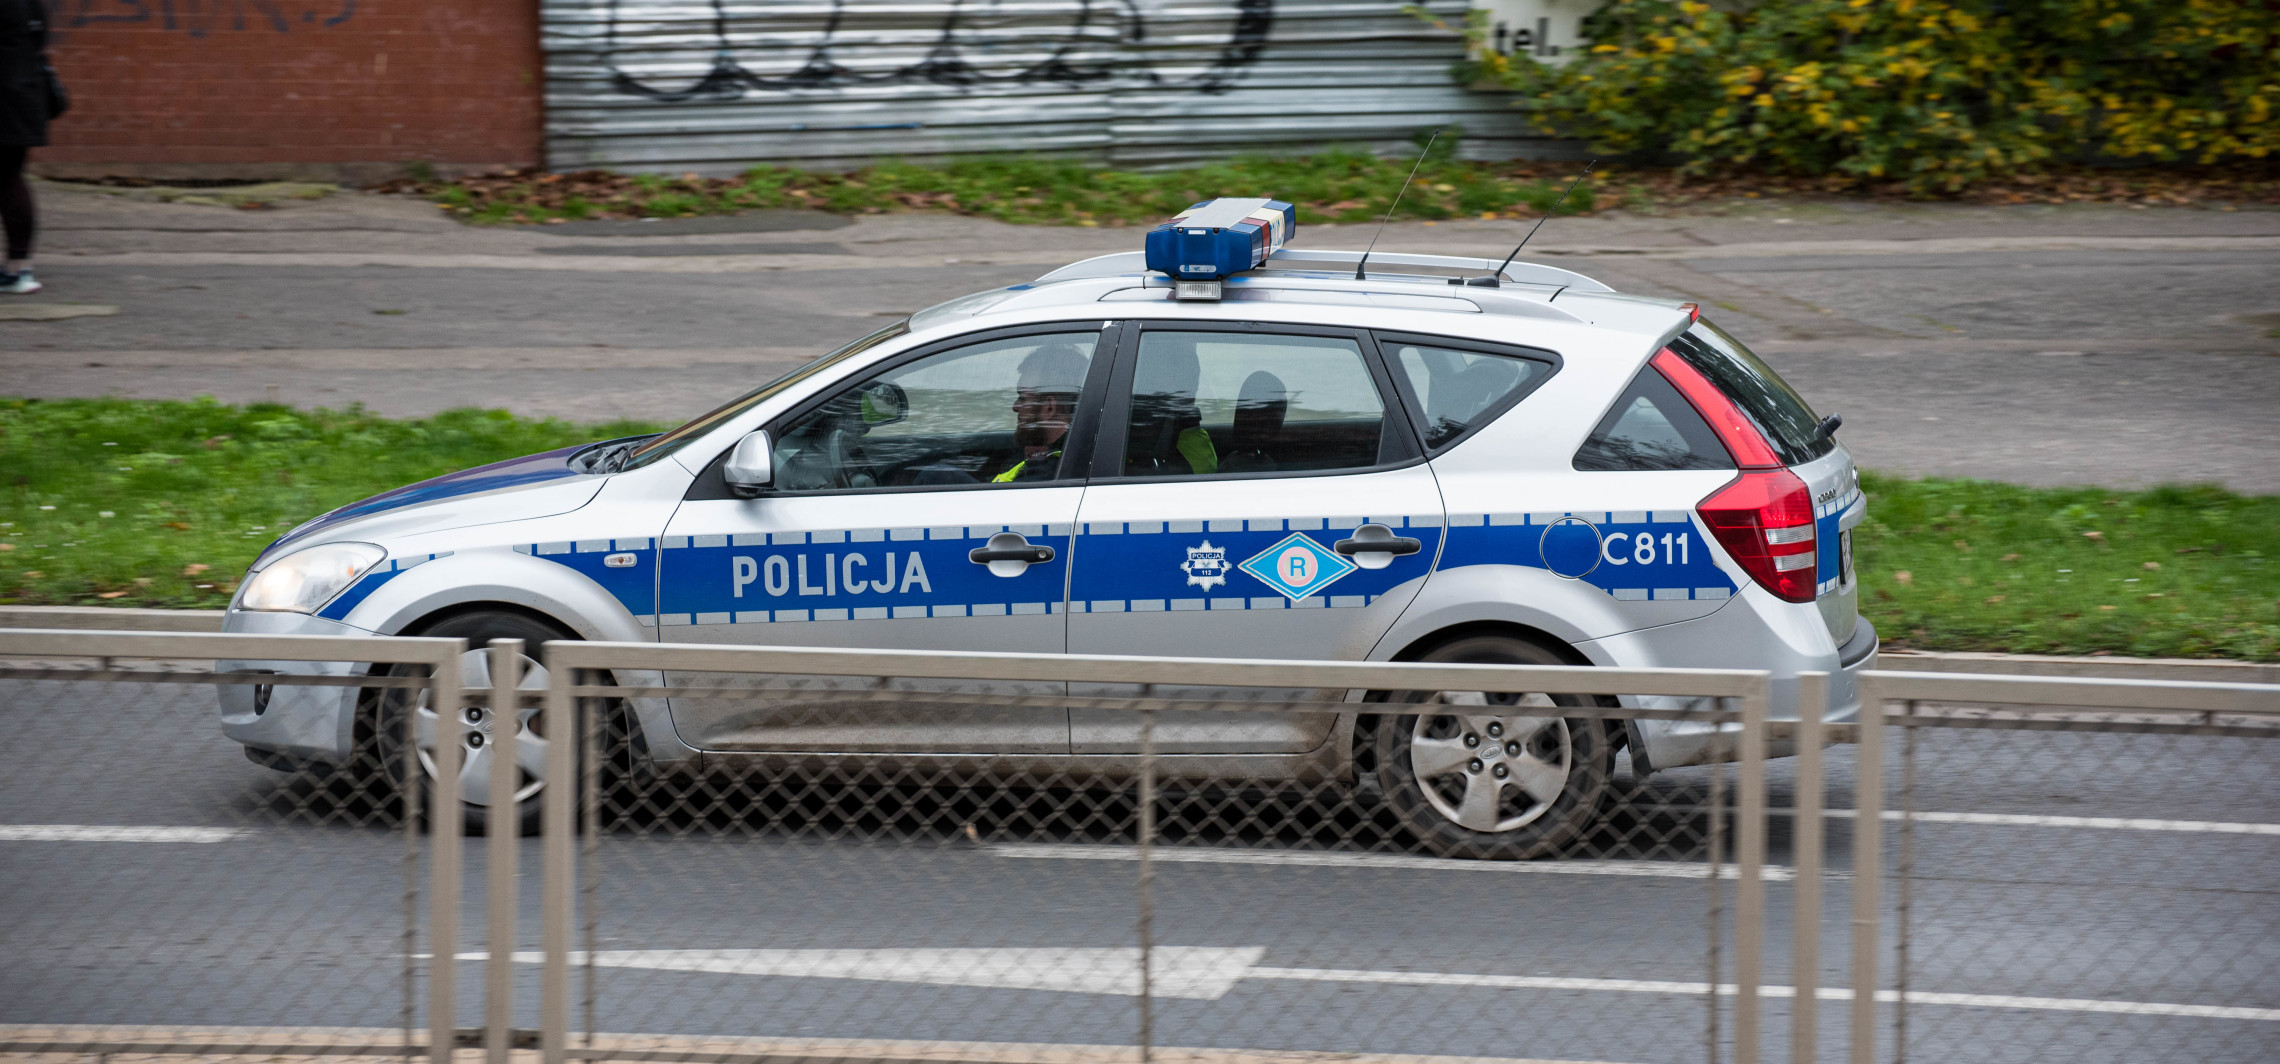 Inowrocław - Policja podsumowała długi weekend na drogach